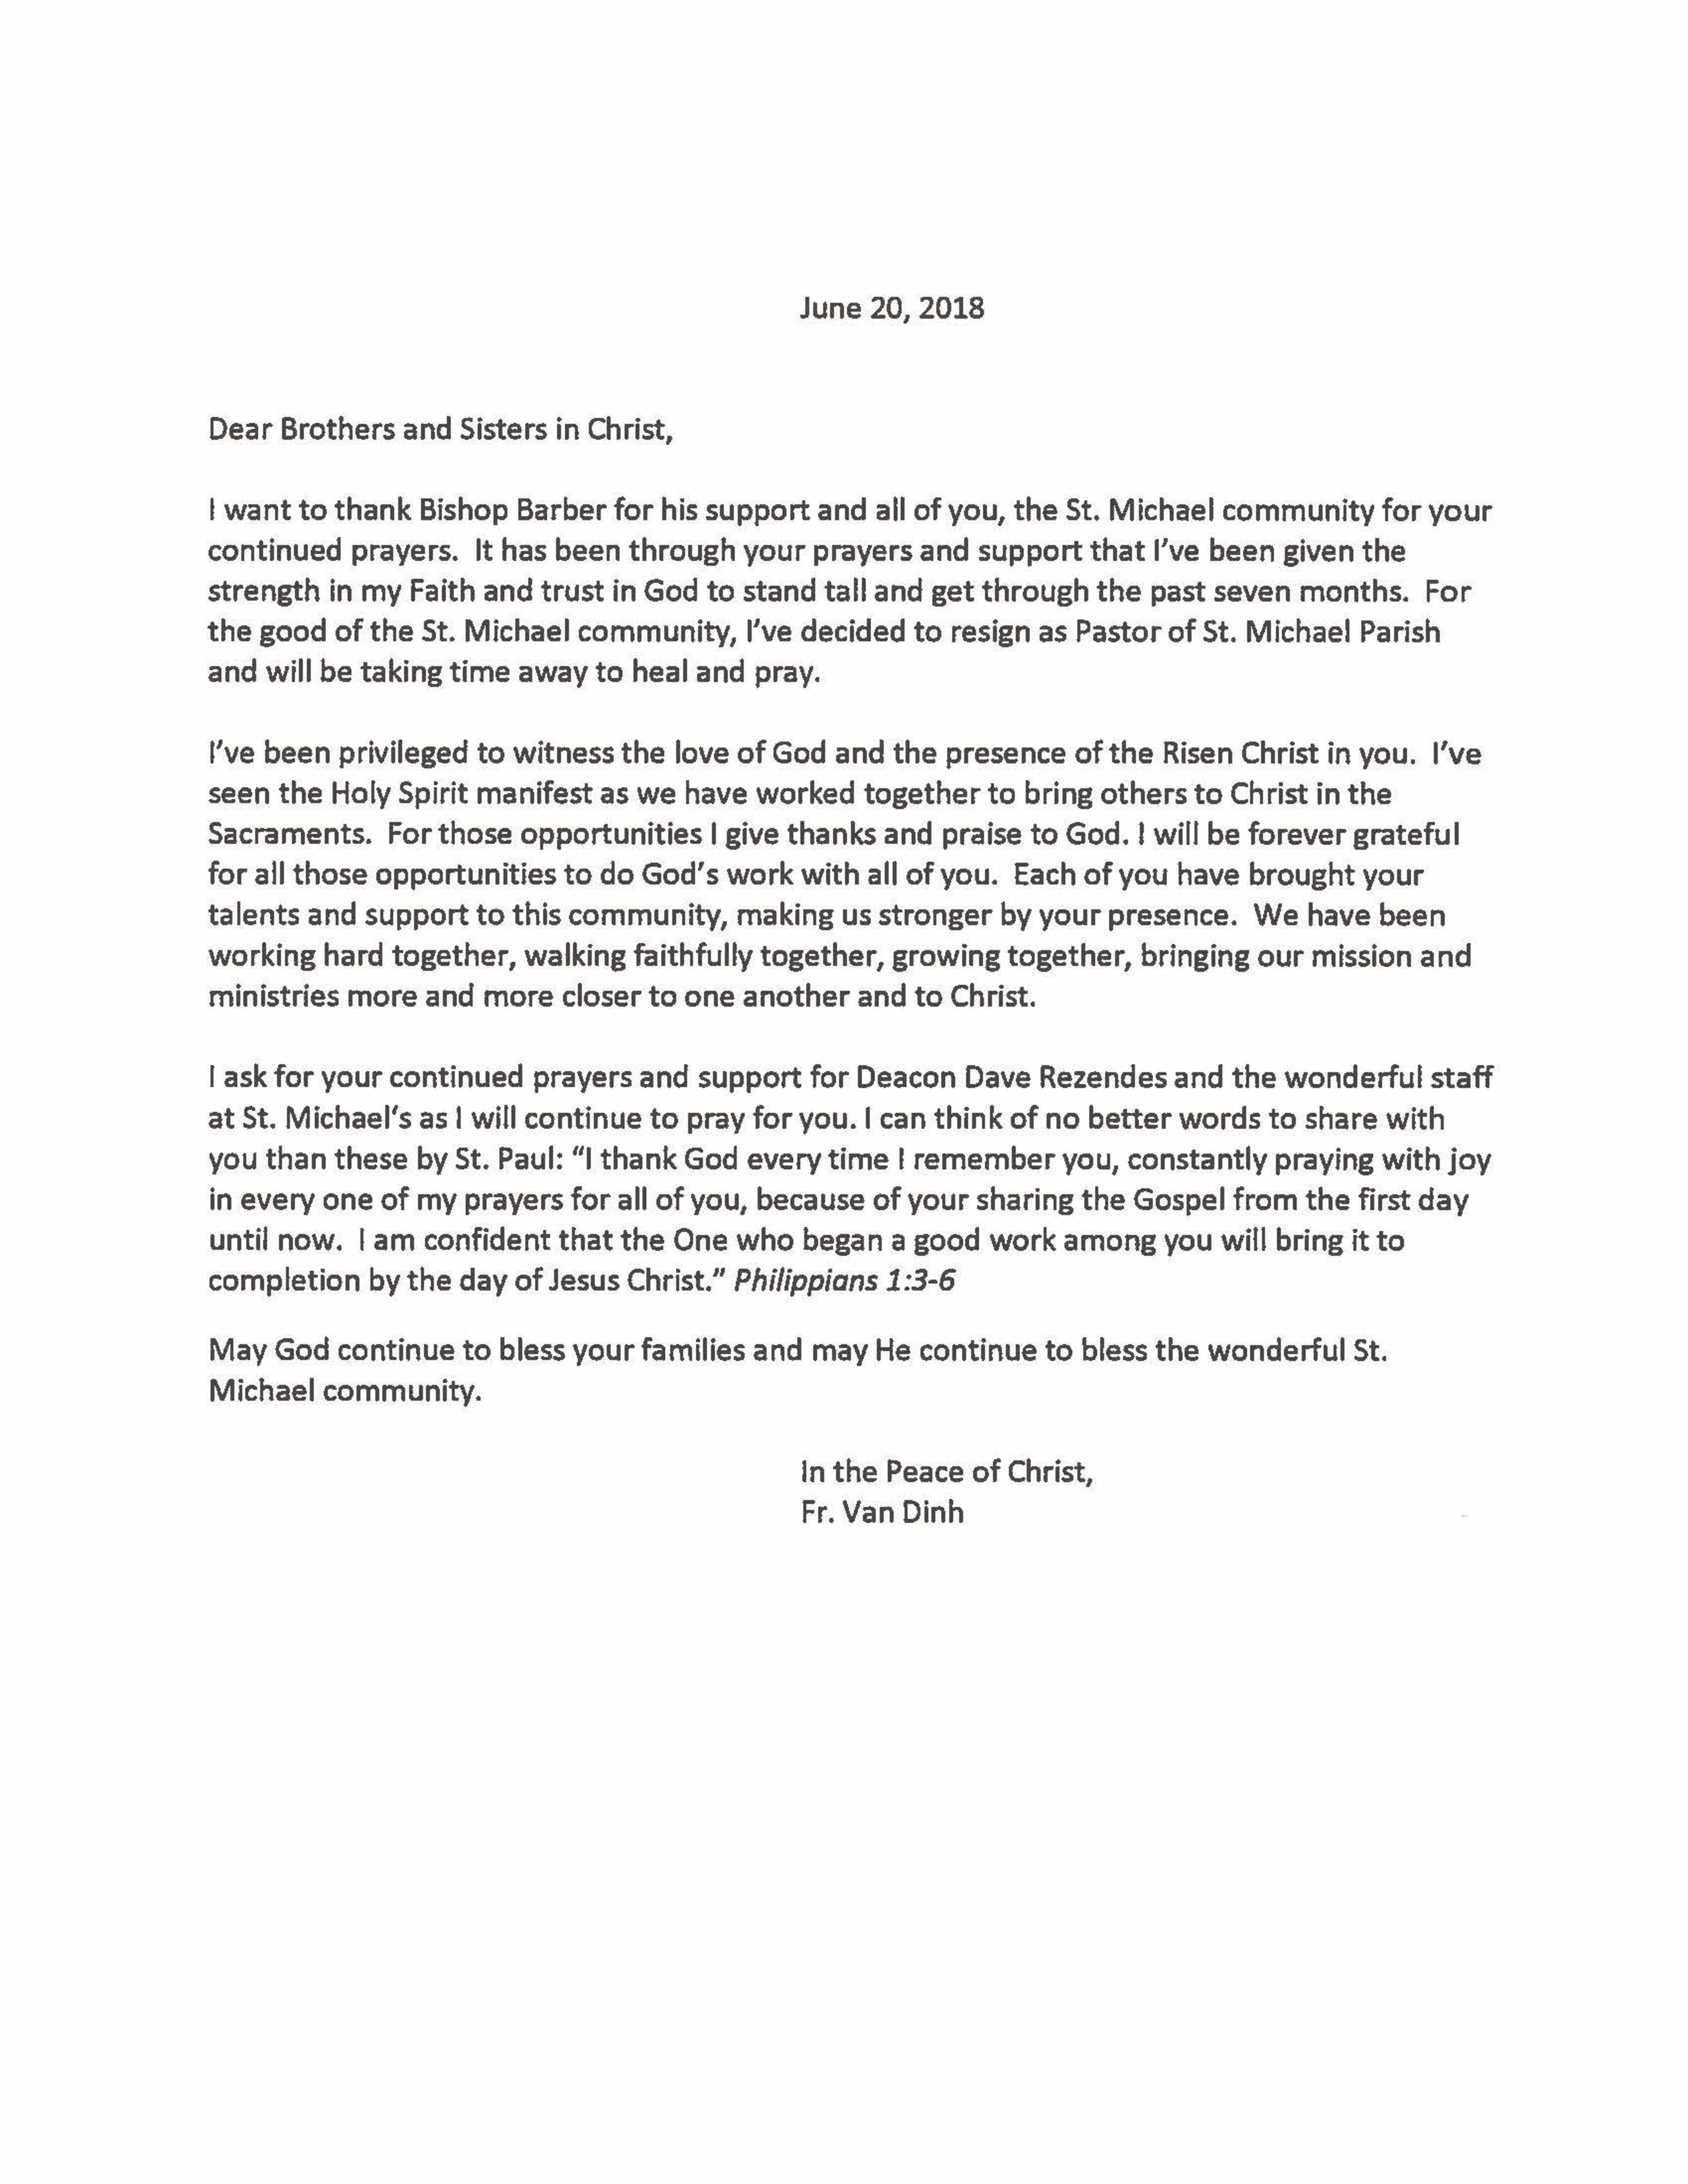 Fr Vans Letter Of Resignation